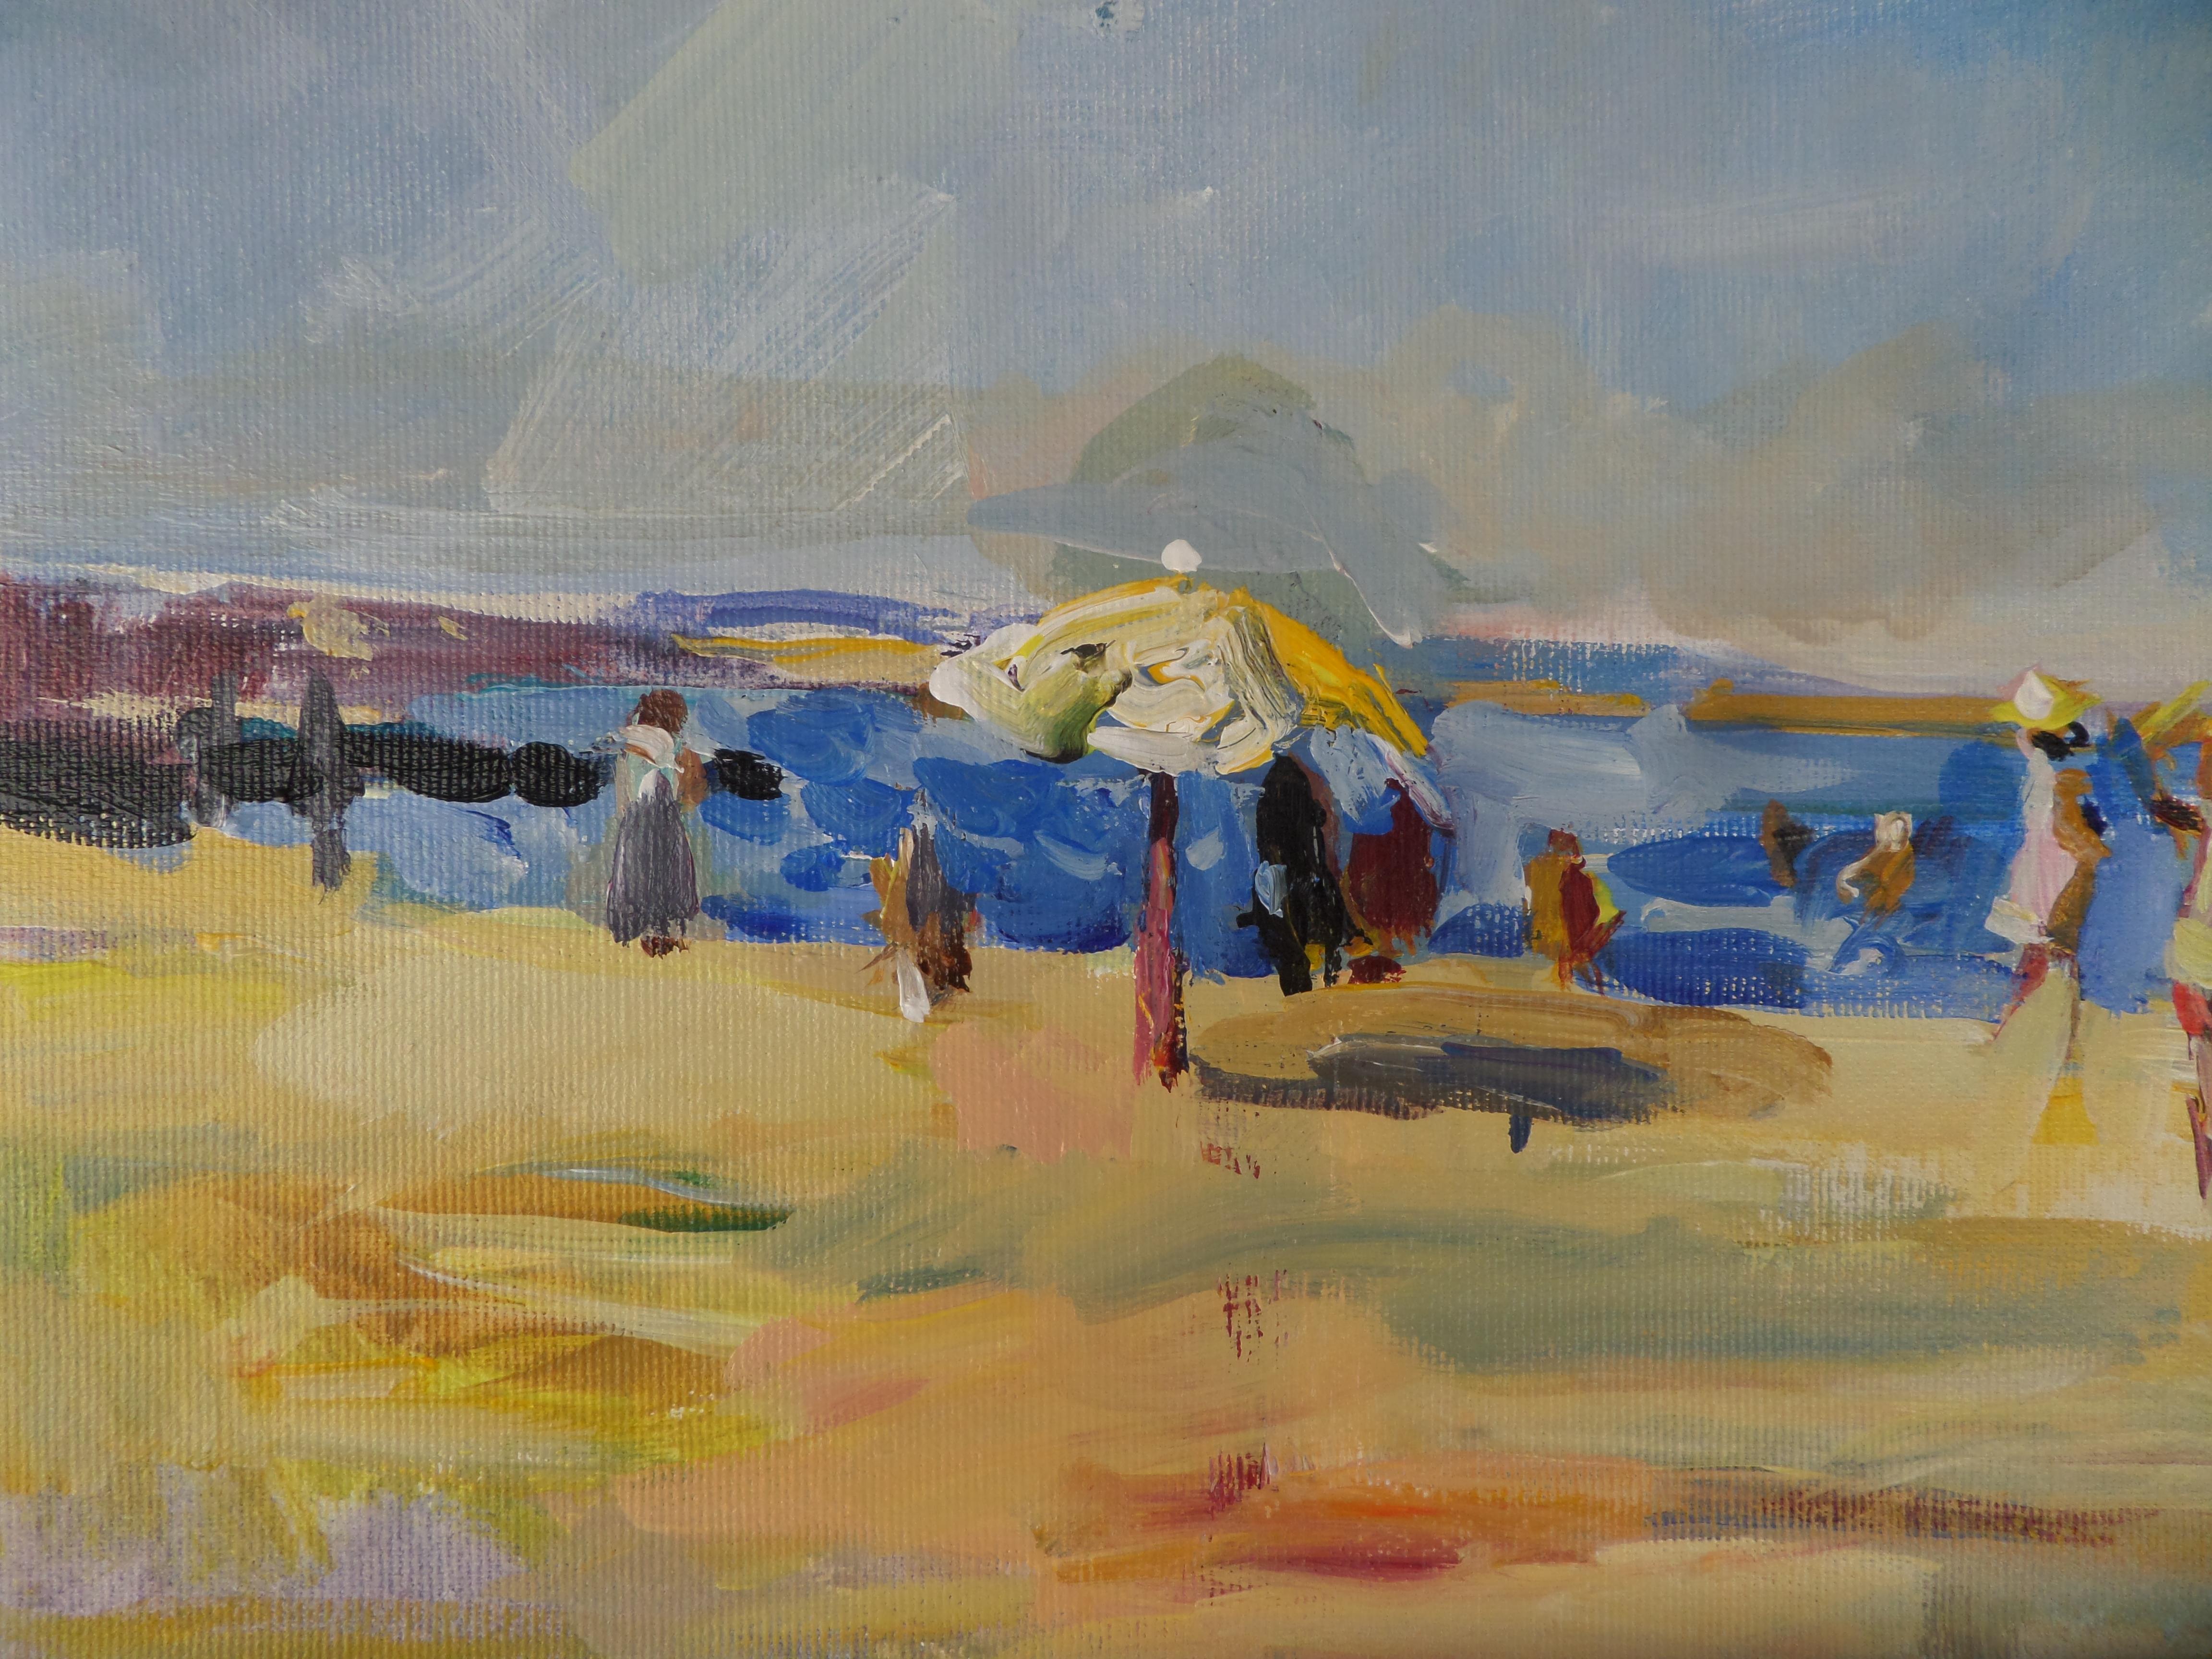 On The Beach - Paysage Peinture à l'huile Couleurs Bleu Jaune Blanc Brown Grey - Gris Figurative Painting par Ivan Roussev